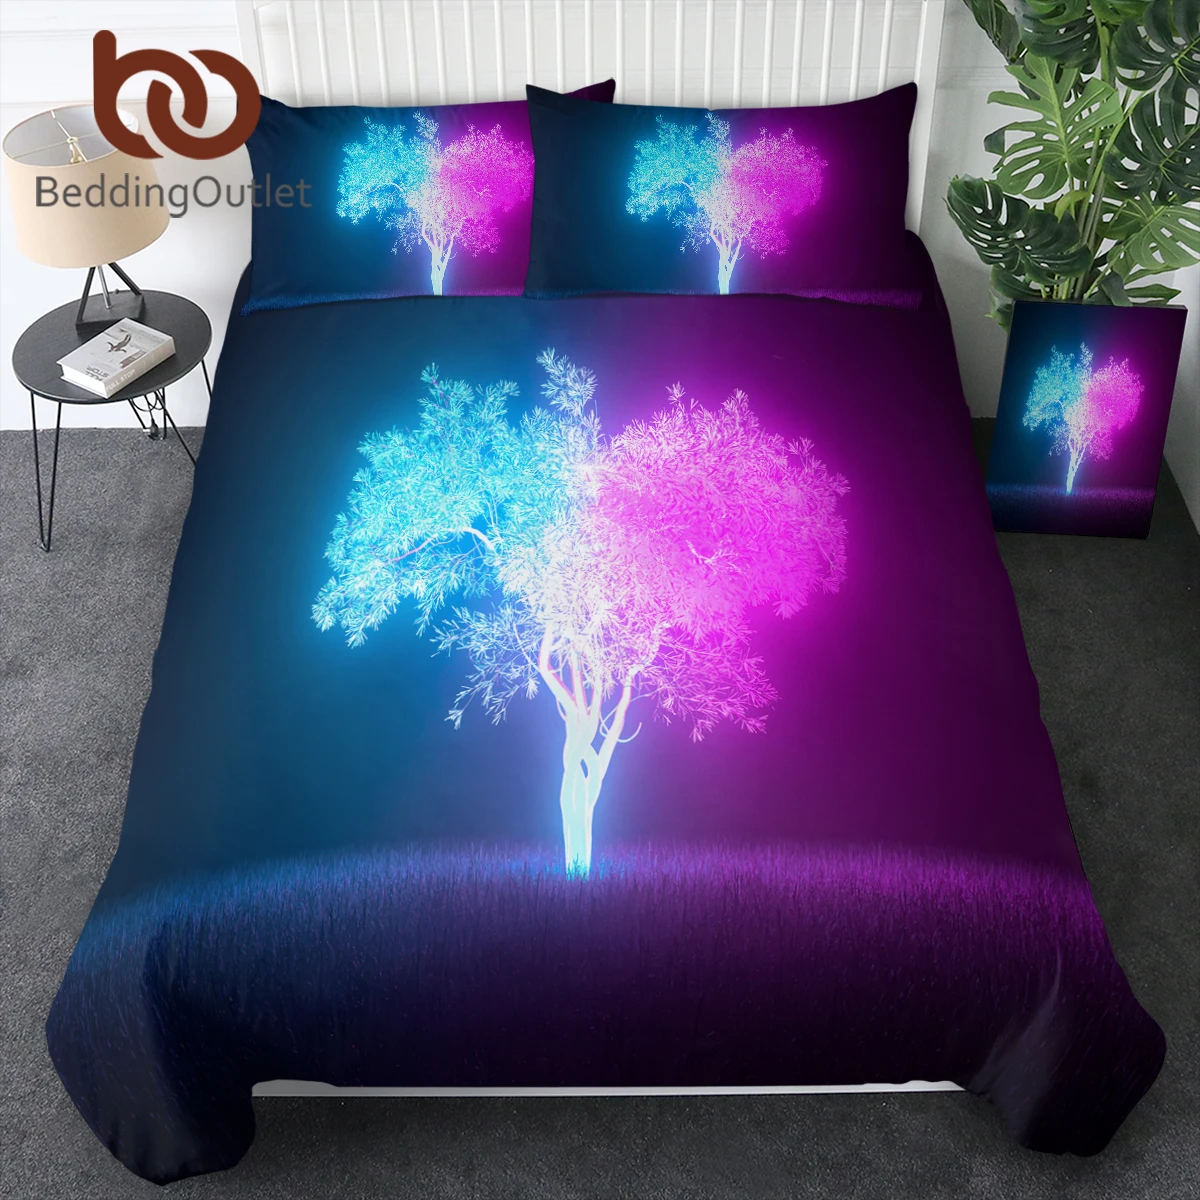 BeddingOutlet nevresim takımı Parlak Ağaç Mantar Nevresim Yatak Odası Çocuk Yatak yatak örtüsü seti Kral Rahat